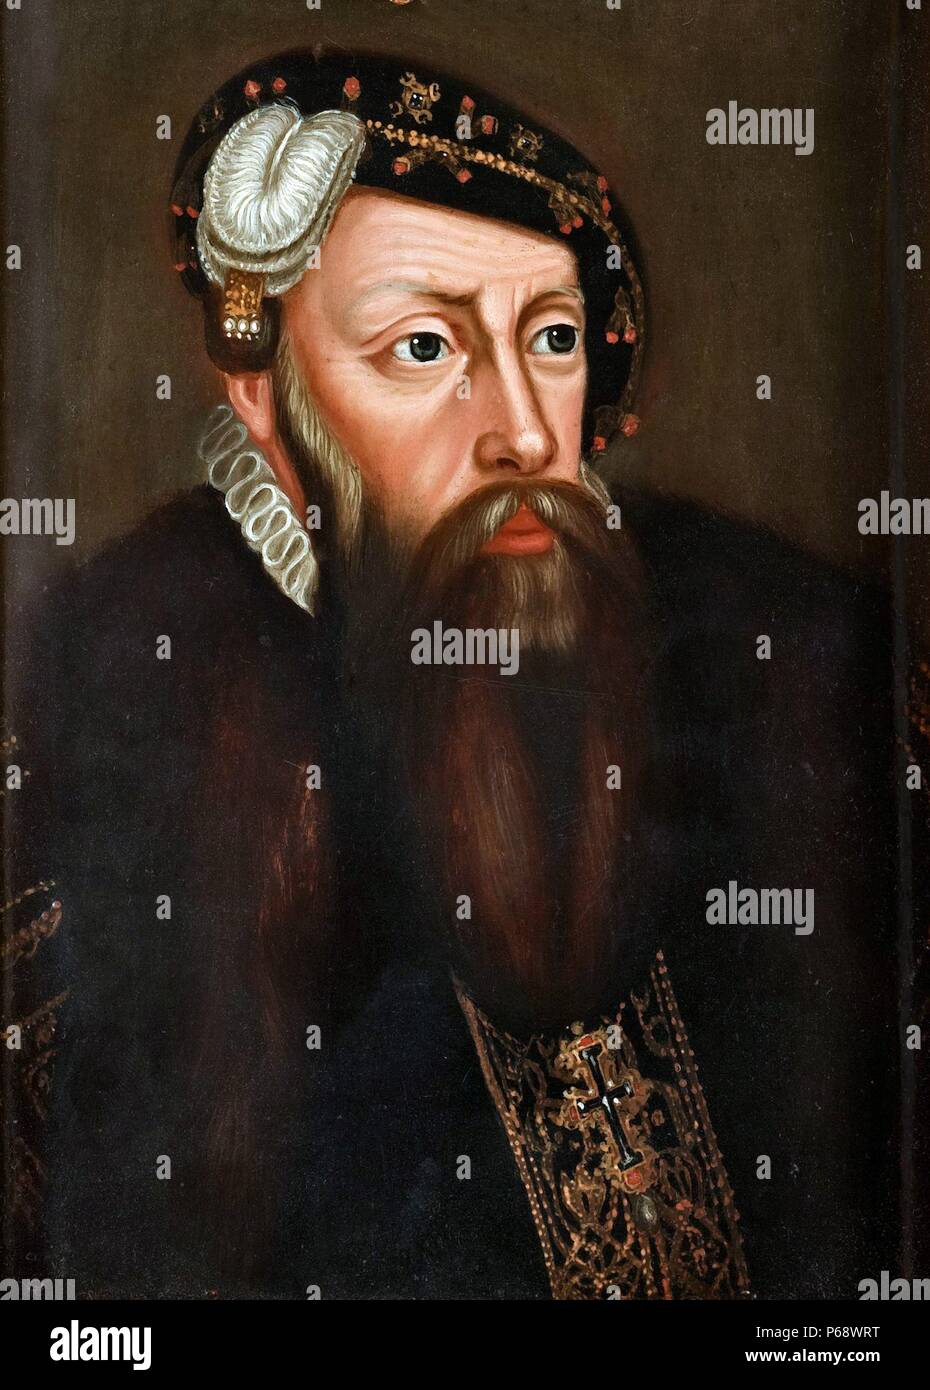 Je Gustav, Gustav Eriksson de la naissance noble famille Vasa et connu plus tard sous le nom de Gustav Vasa (12 mai 1496[1] - 29 septembre 1560), Roi de Suède de 1523 jusqu'à sa mort, portrait par Ulla (Ulrika Frederika) Pâque , 1735-1796 (Suède) Banque D'Images